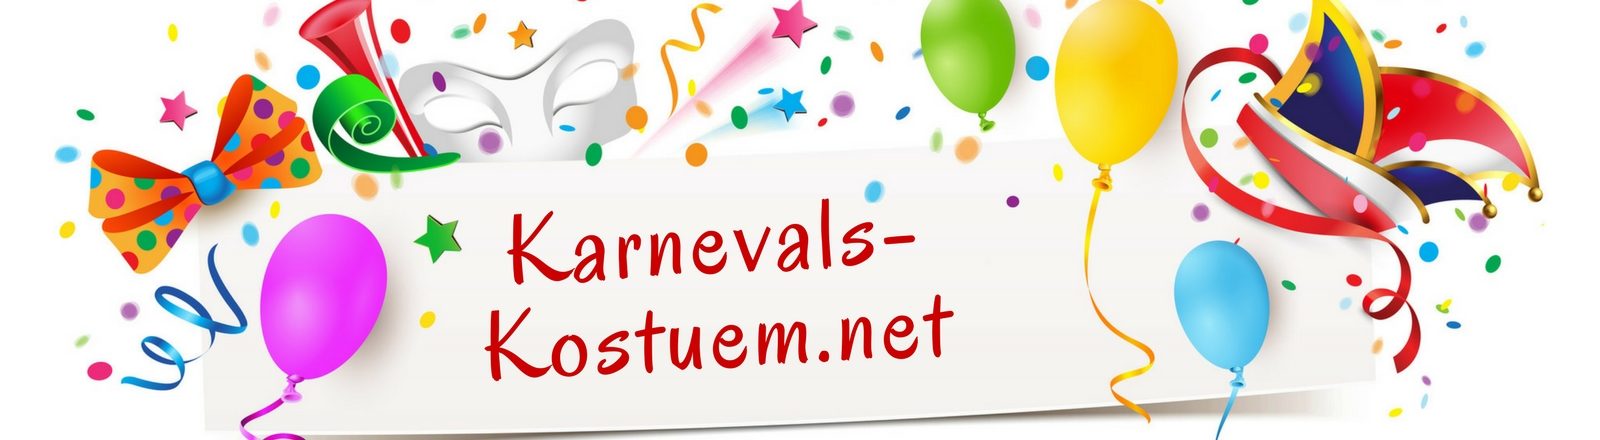 Karnevals-Kostuem.net